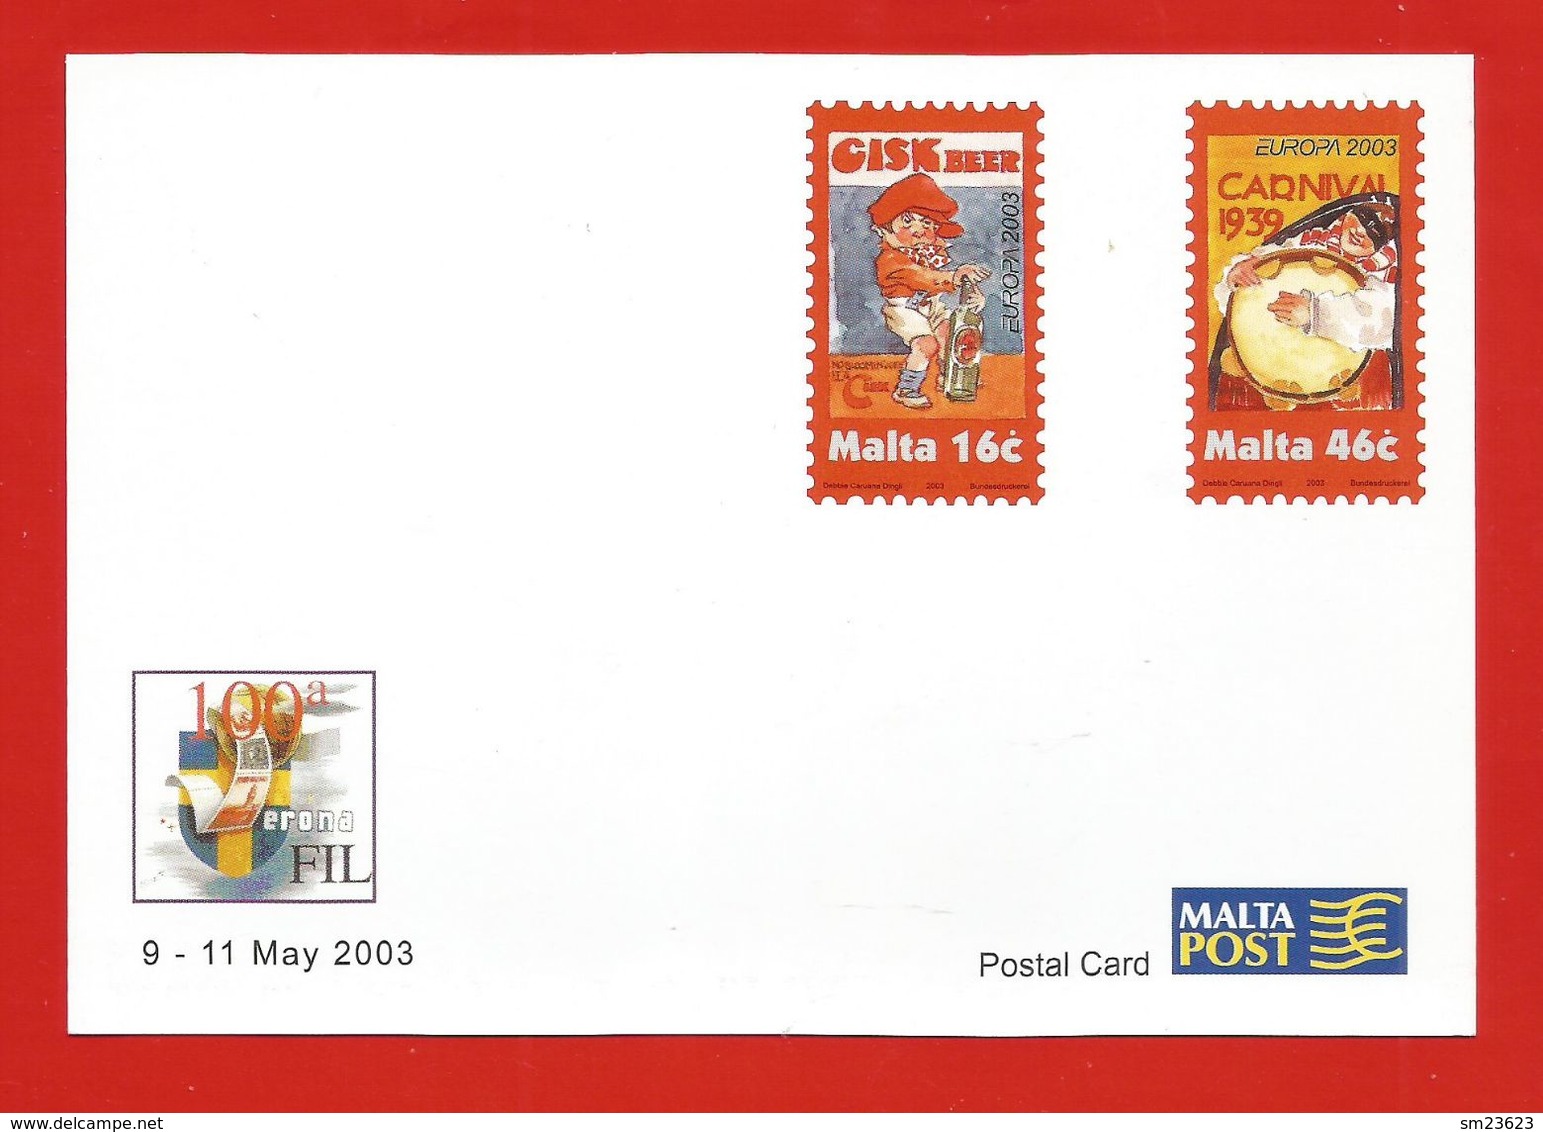 Malta  2003  Mi.Nr. 1274 / 75 , EUROPA CEPT Plakatkunst - Ganzsache - Sonderpostkarte - Malta Post - Postfrisch - 2003